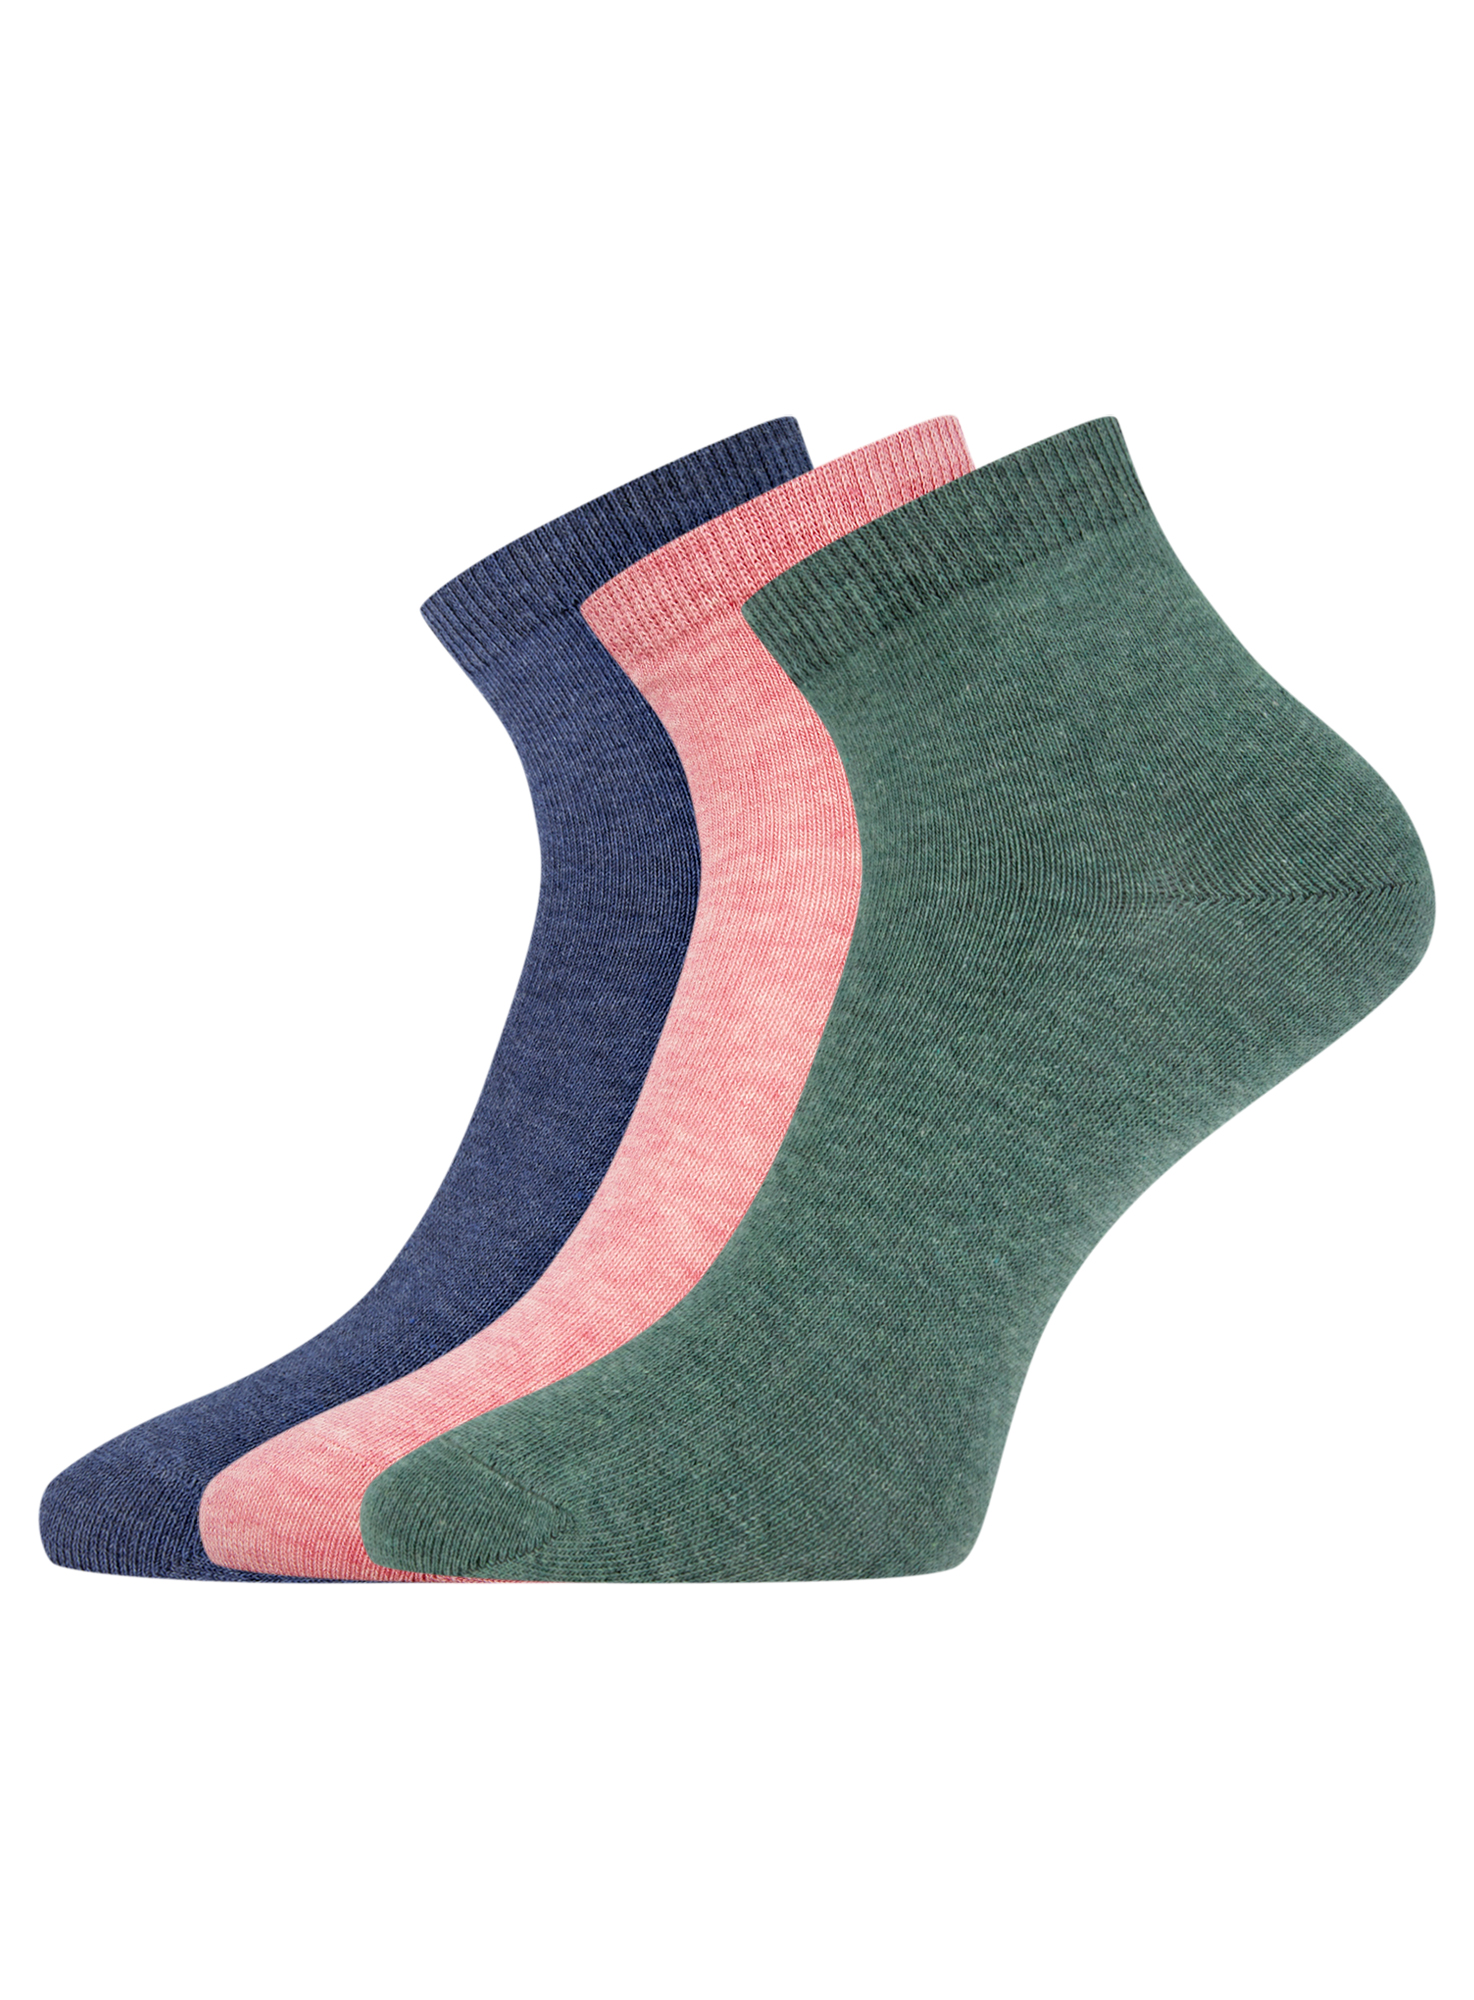 Комплект носков женских oodji 57102418T3 синих; розовых; зеленых 38-40 RU